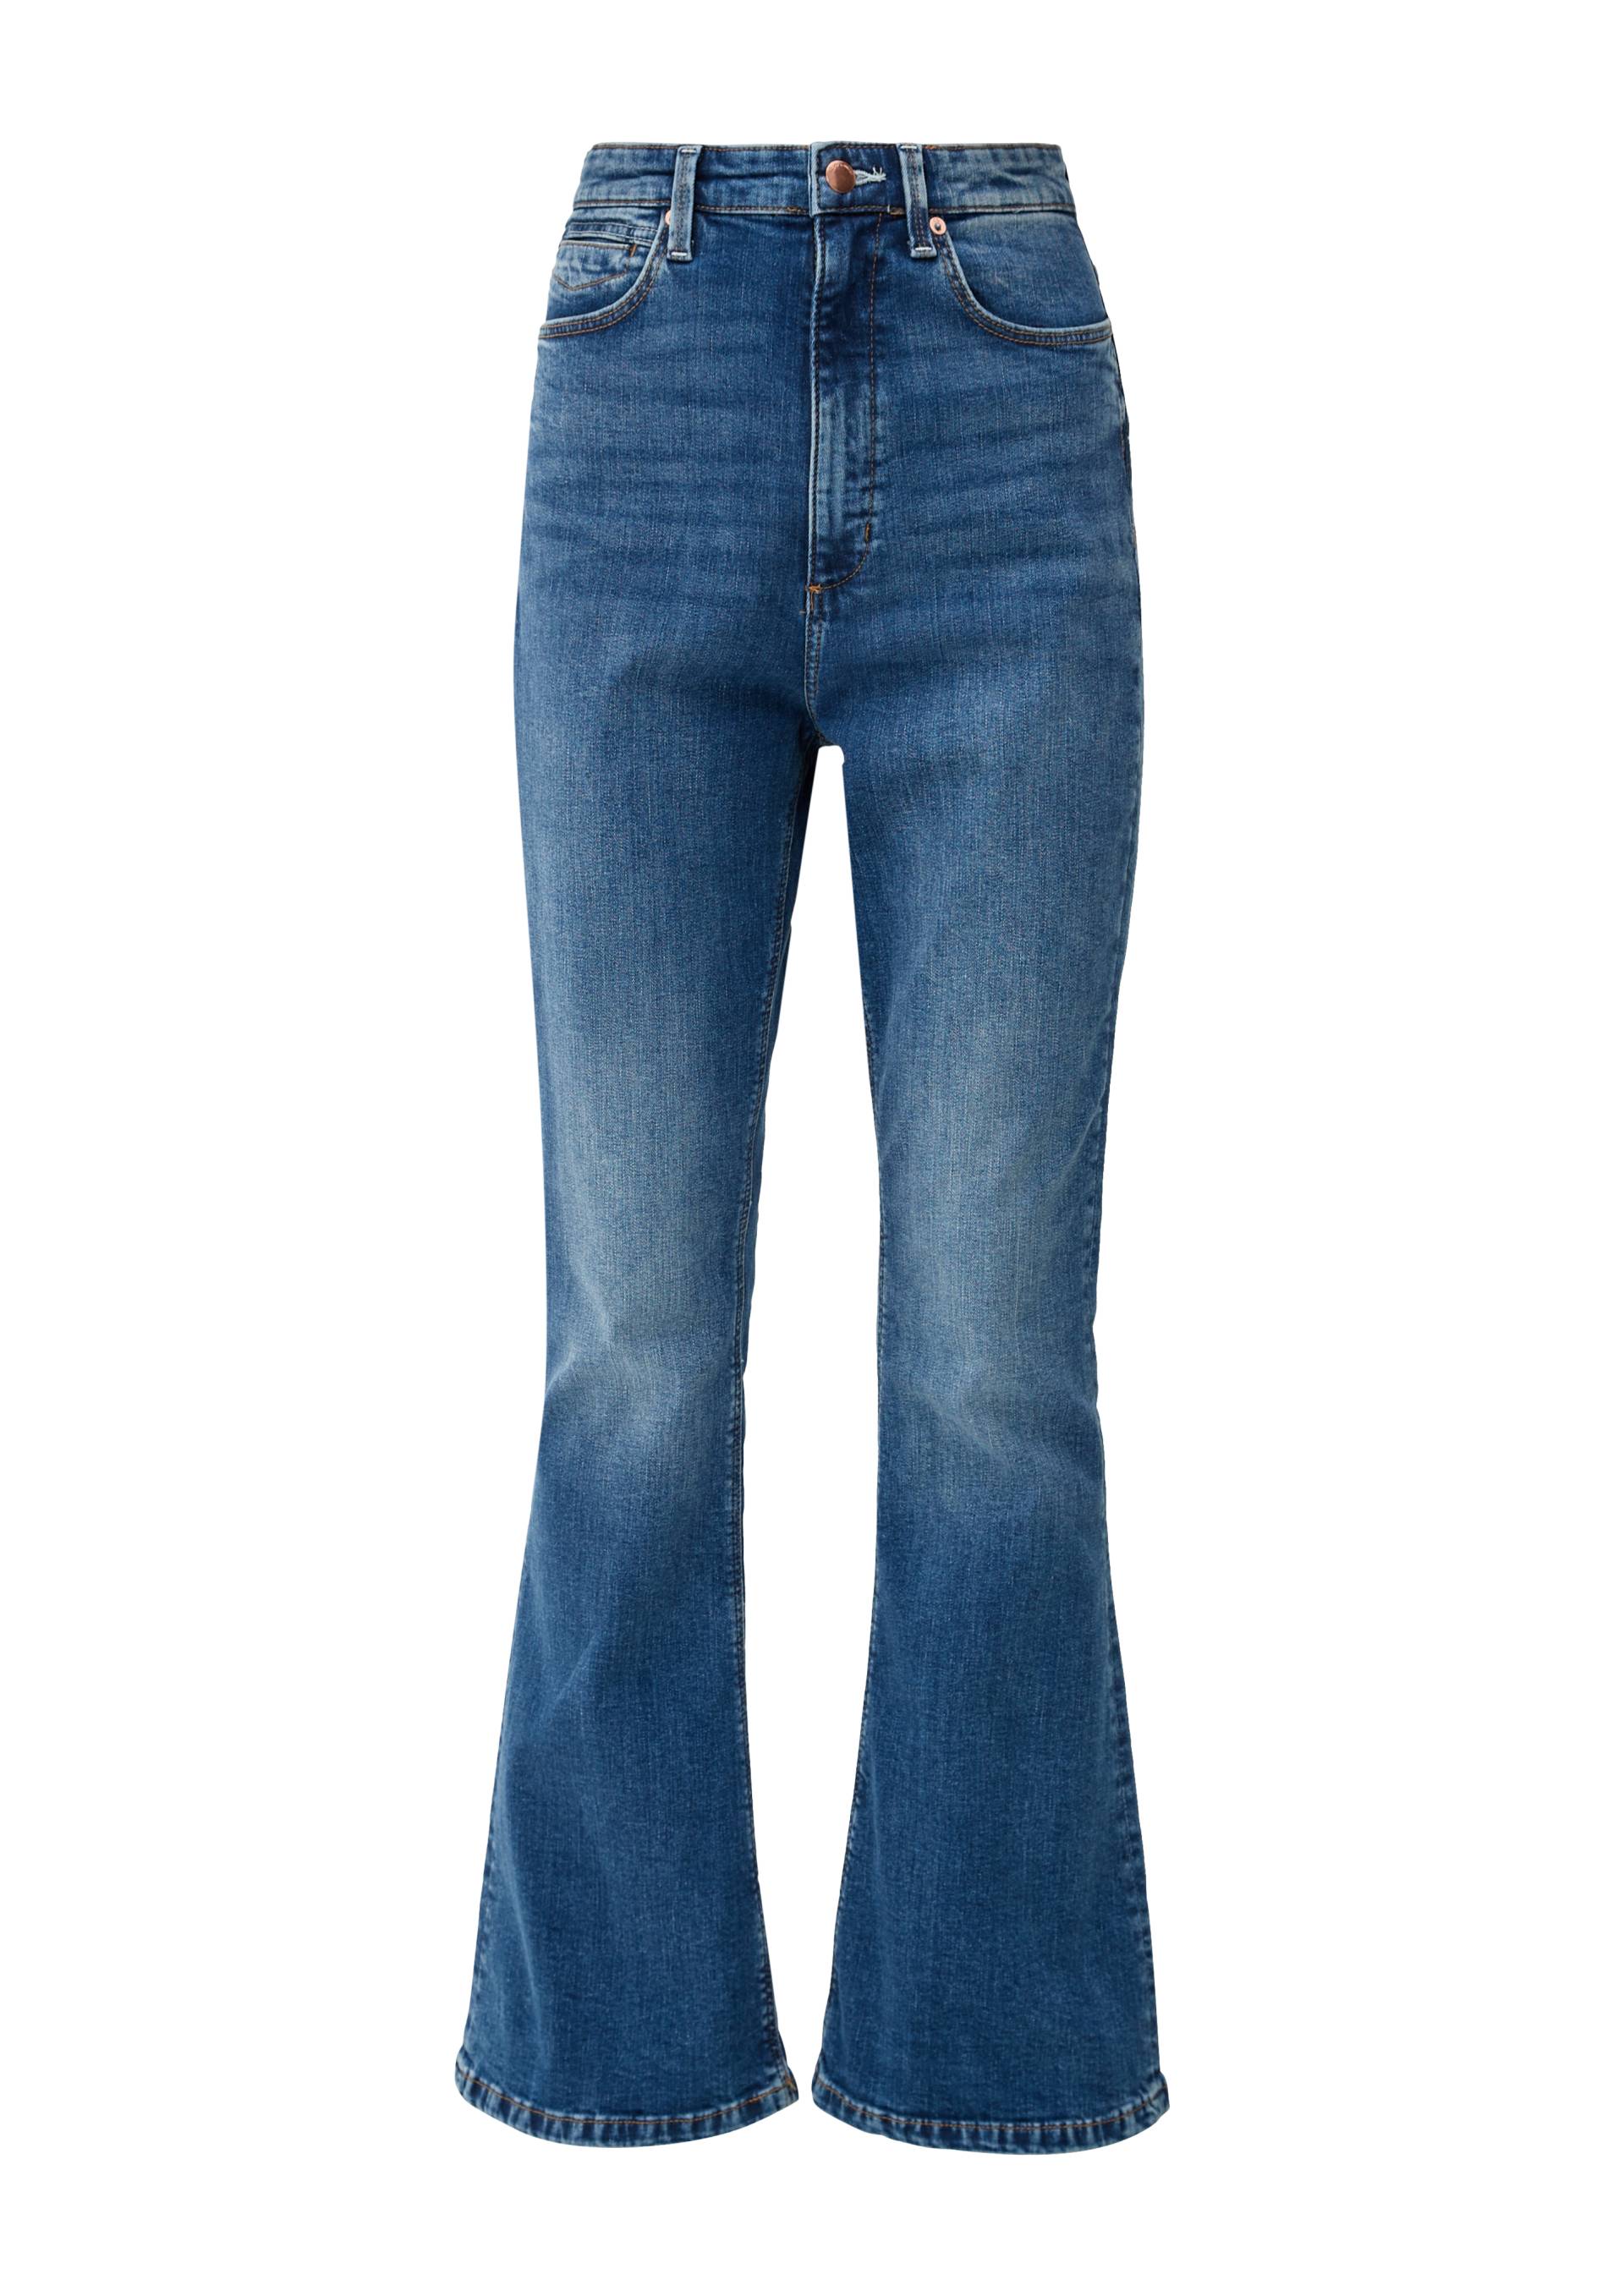 QS - Jeans Reena / Slim Fit / High Rise / Flared Leg, Damen, blau von QS